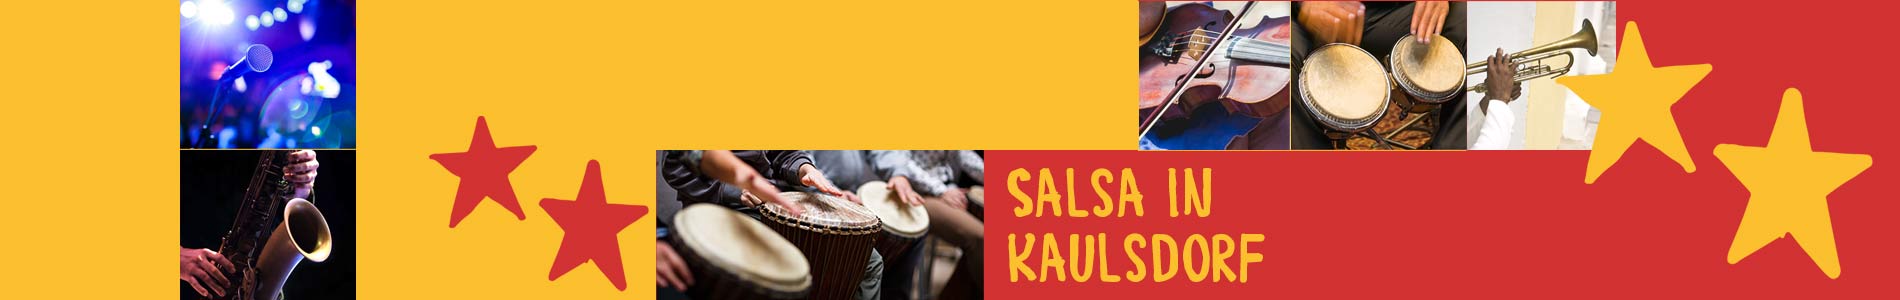 Salsa in Kaulsdorf – Salsa lernen und tanzen, Tanzkurse, Partys, Veranstaltungen